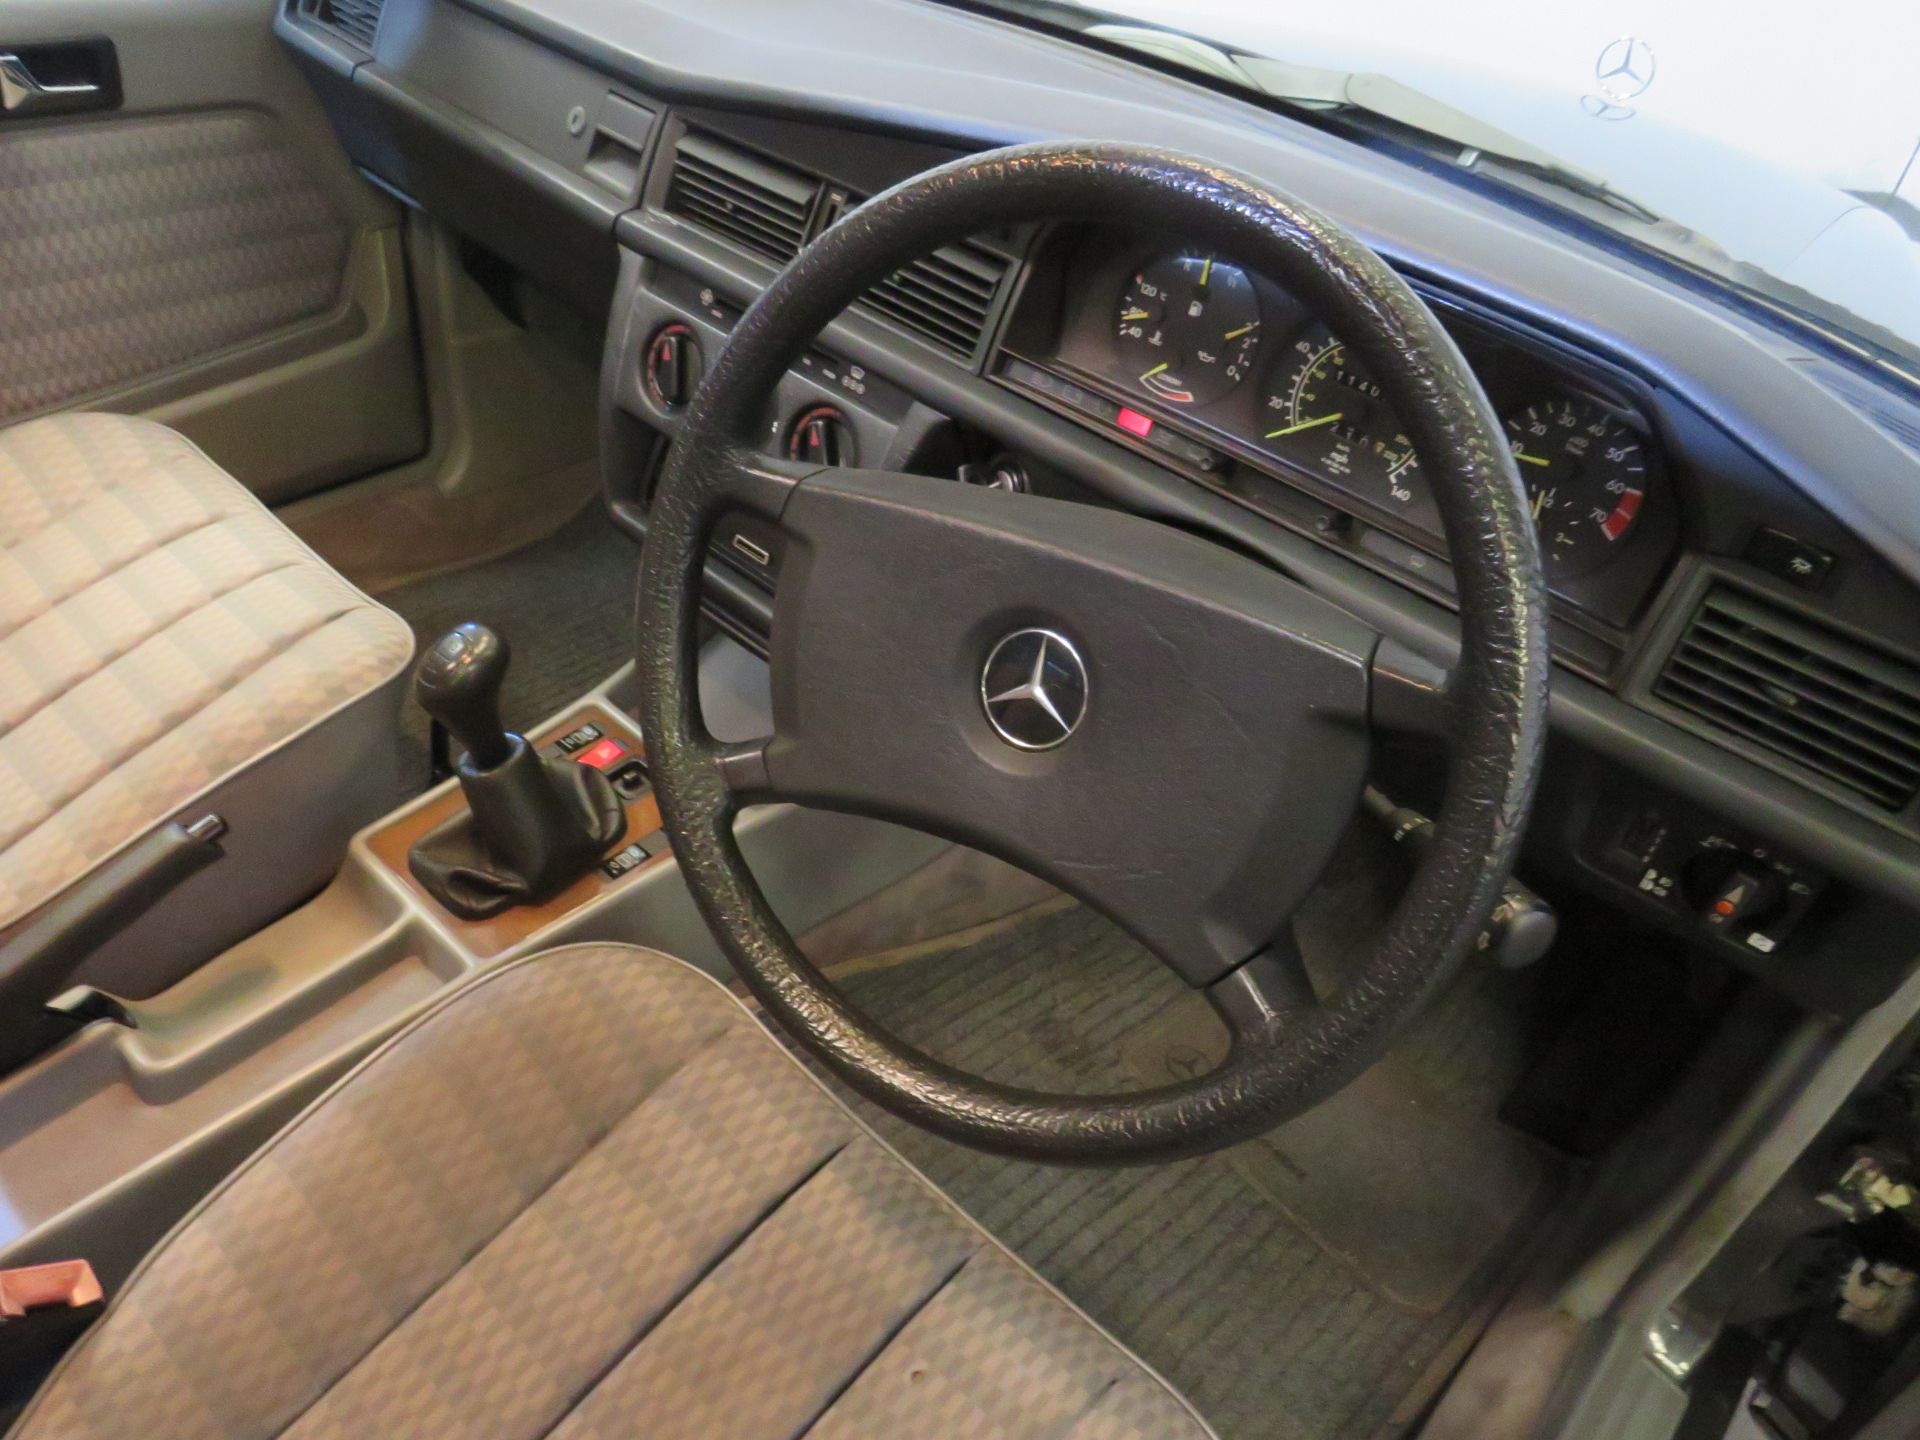 1989 Mercedes 190E Manual - 1997cc - Image 9 of 21